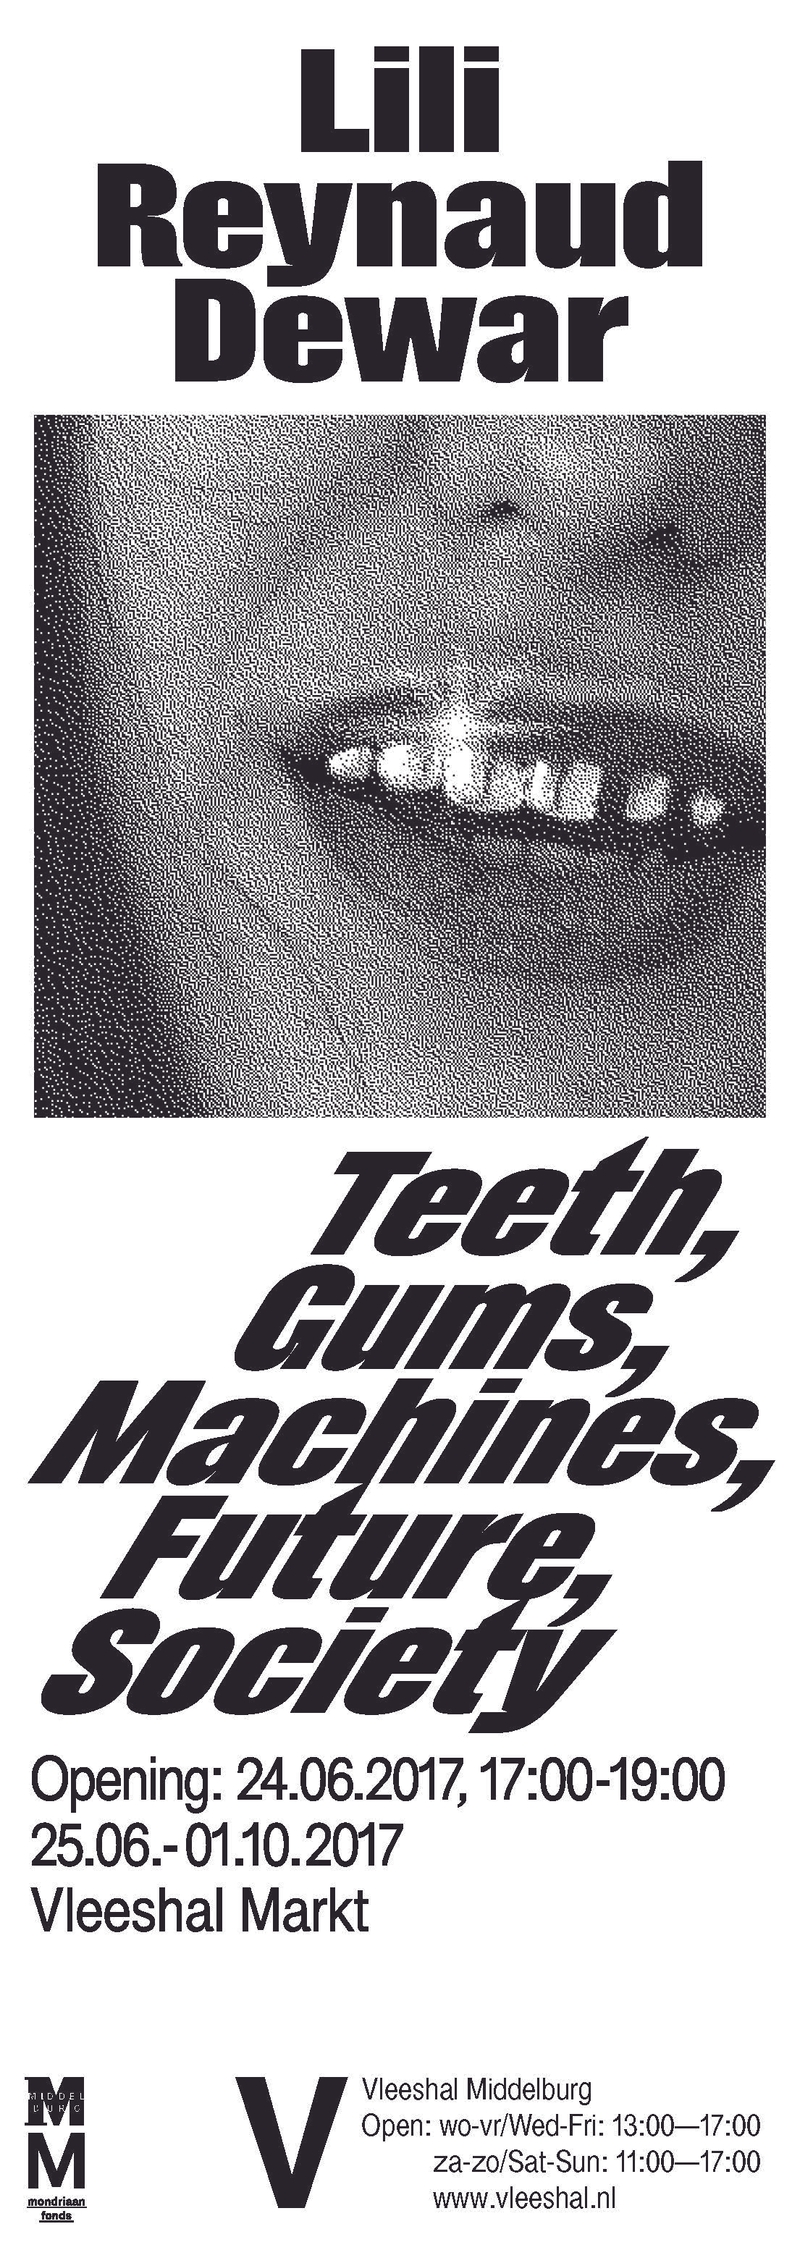 Advertentie, Metropolis M | Teeth, Gums, Machines, Future, Society | Jungmyung Lee